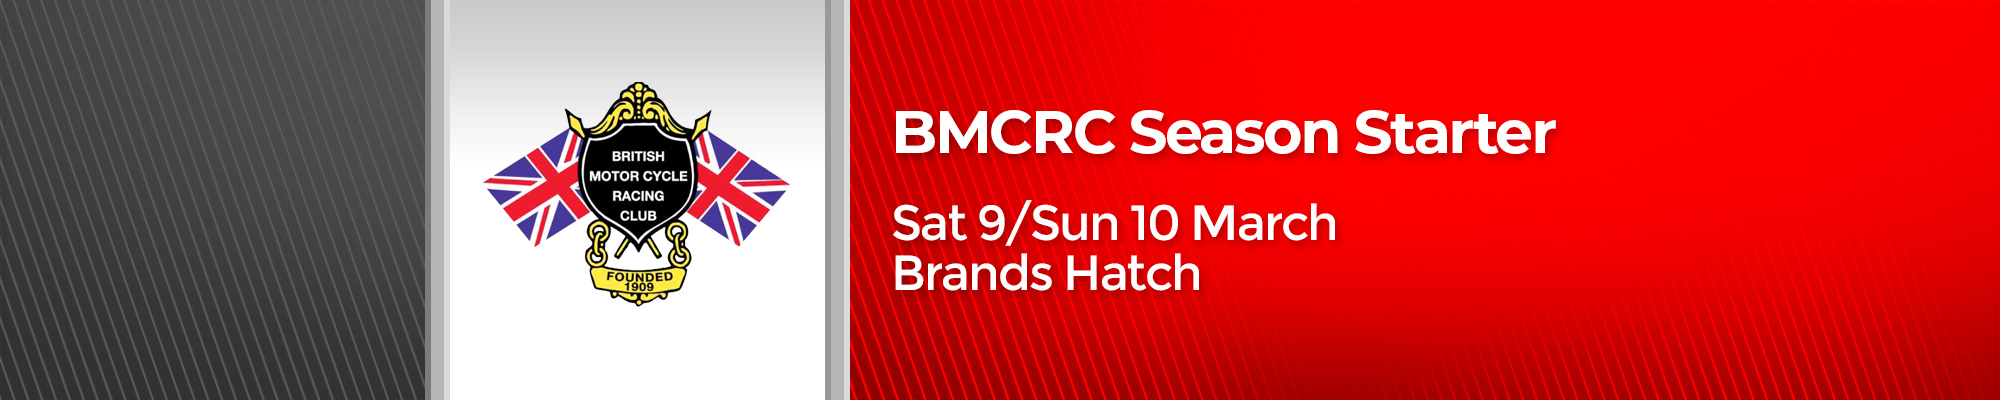 BMCRC Season Starter